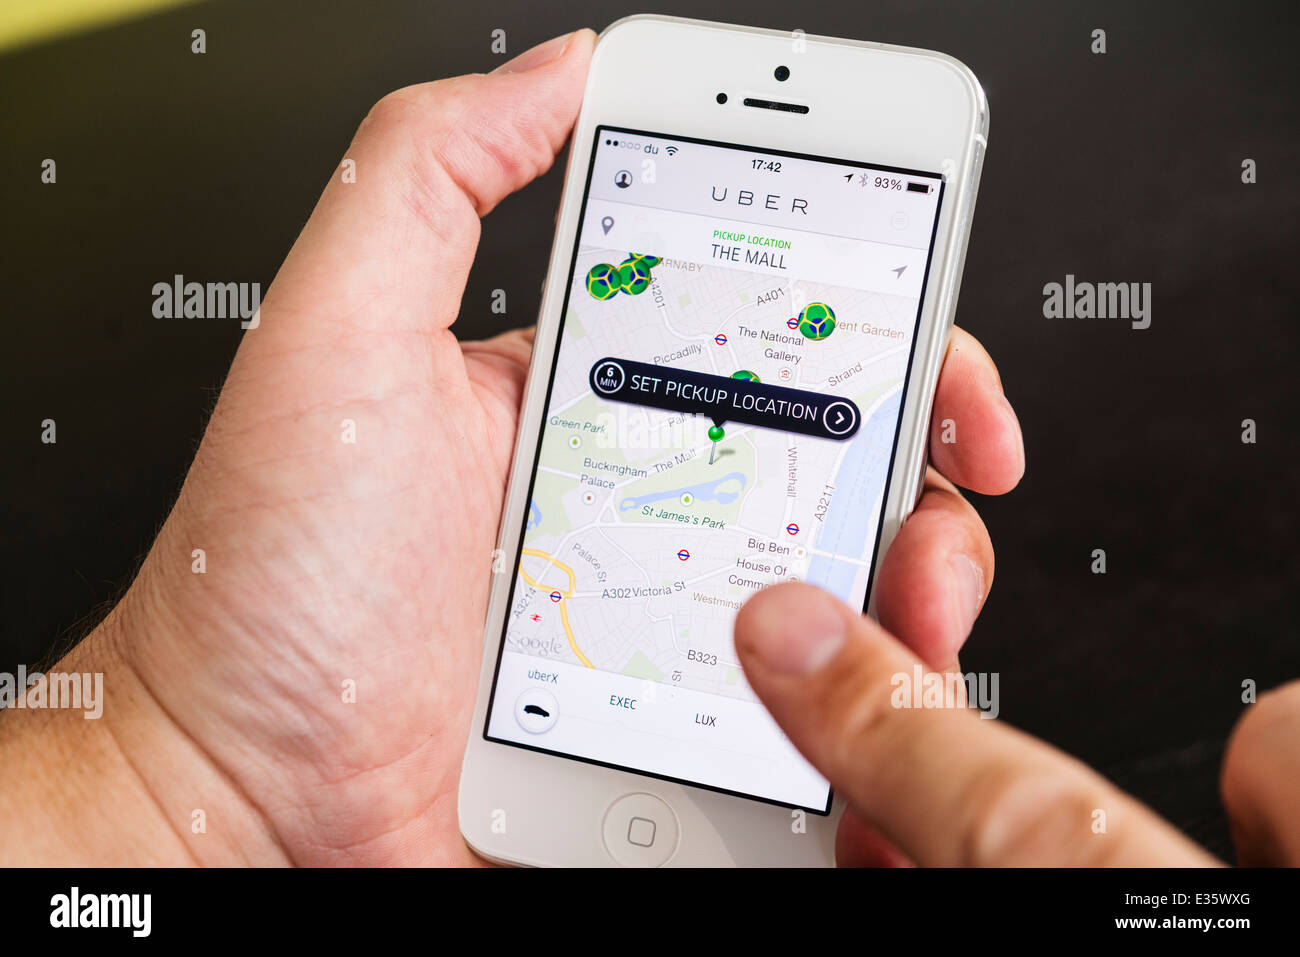 Detalle de Uber Reserva taxi app mostrando puntos de recogida en Londres el iphone teléfonos inteligentes. Foto de stock